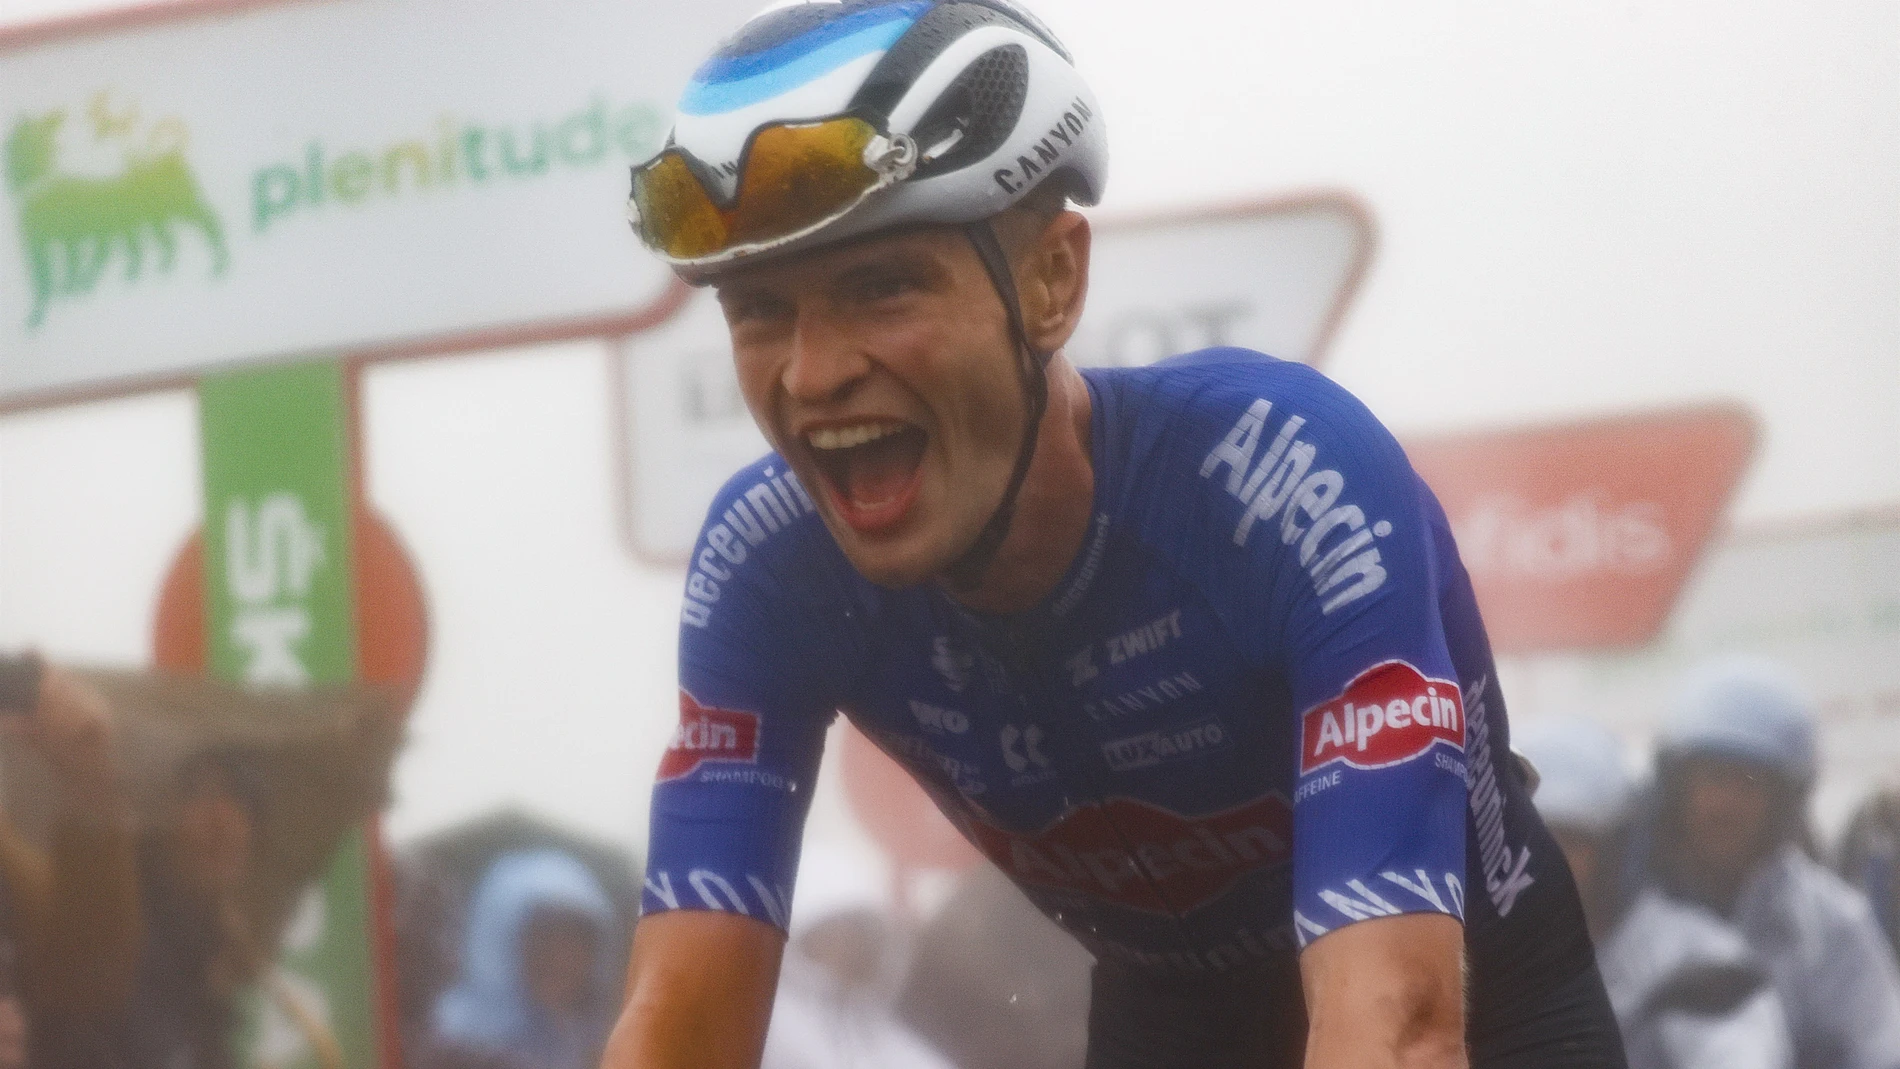 El australiano Jay Hinde celebra su victoria en el Pico Jano en la sexta etapa de La Vuelta a España 2022 LUIS ANGEL GÓMEZ / SPRINTCYCLING 27/08/2022